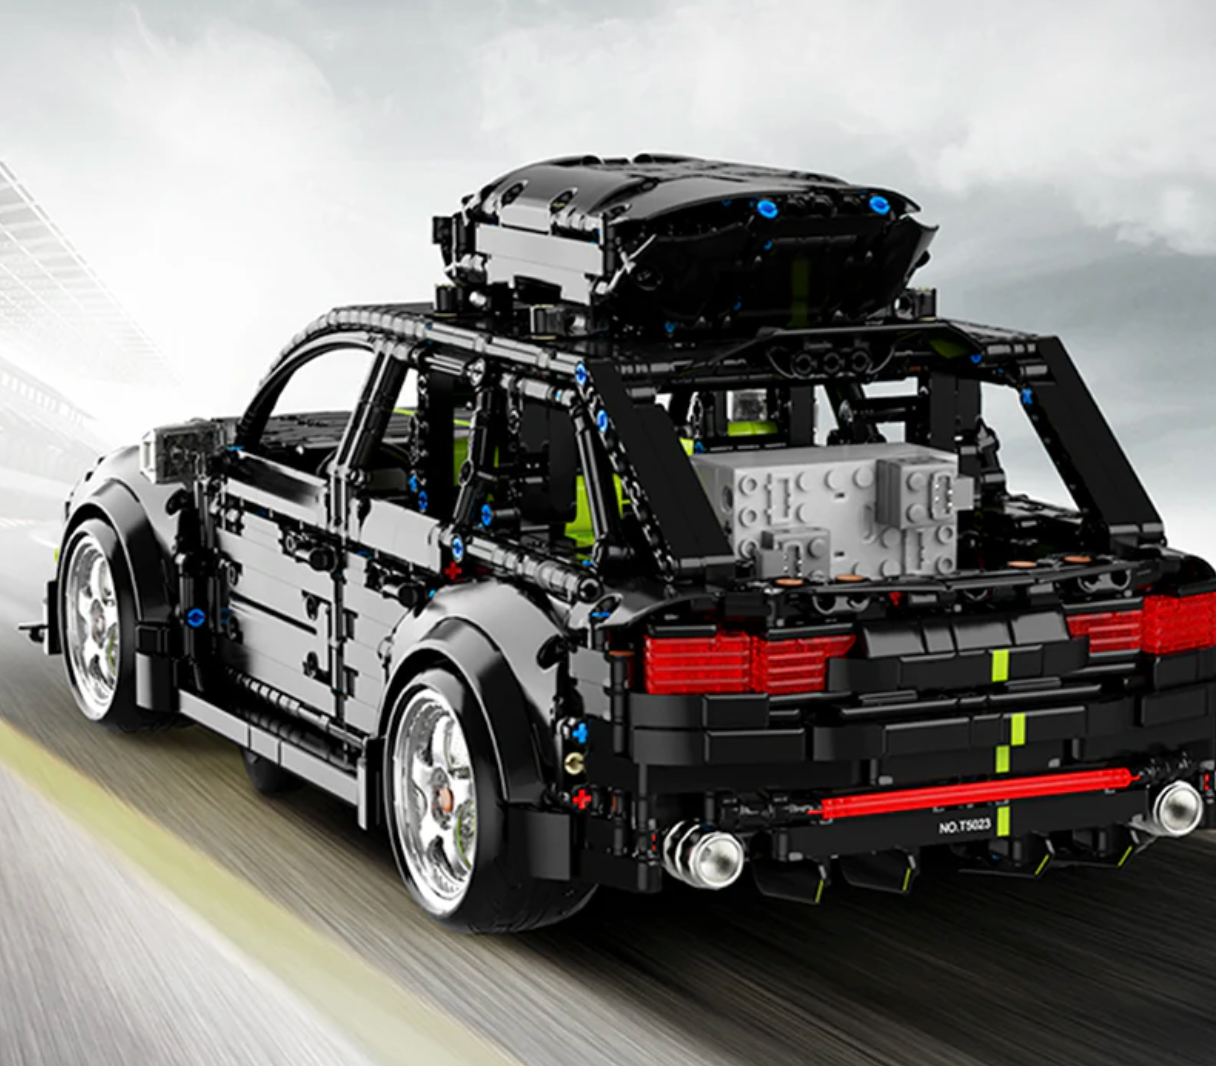 MOC LEGO Car- Audi RS6